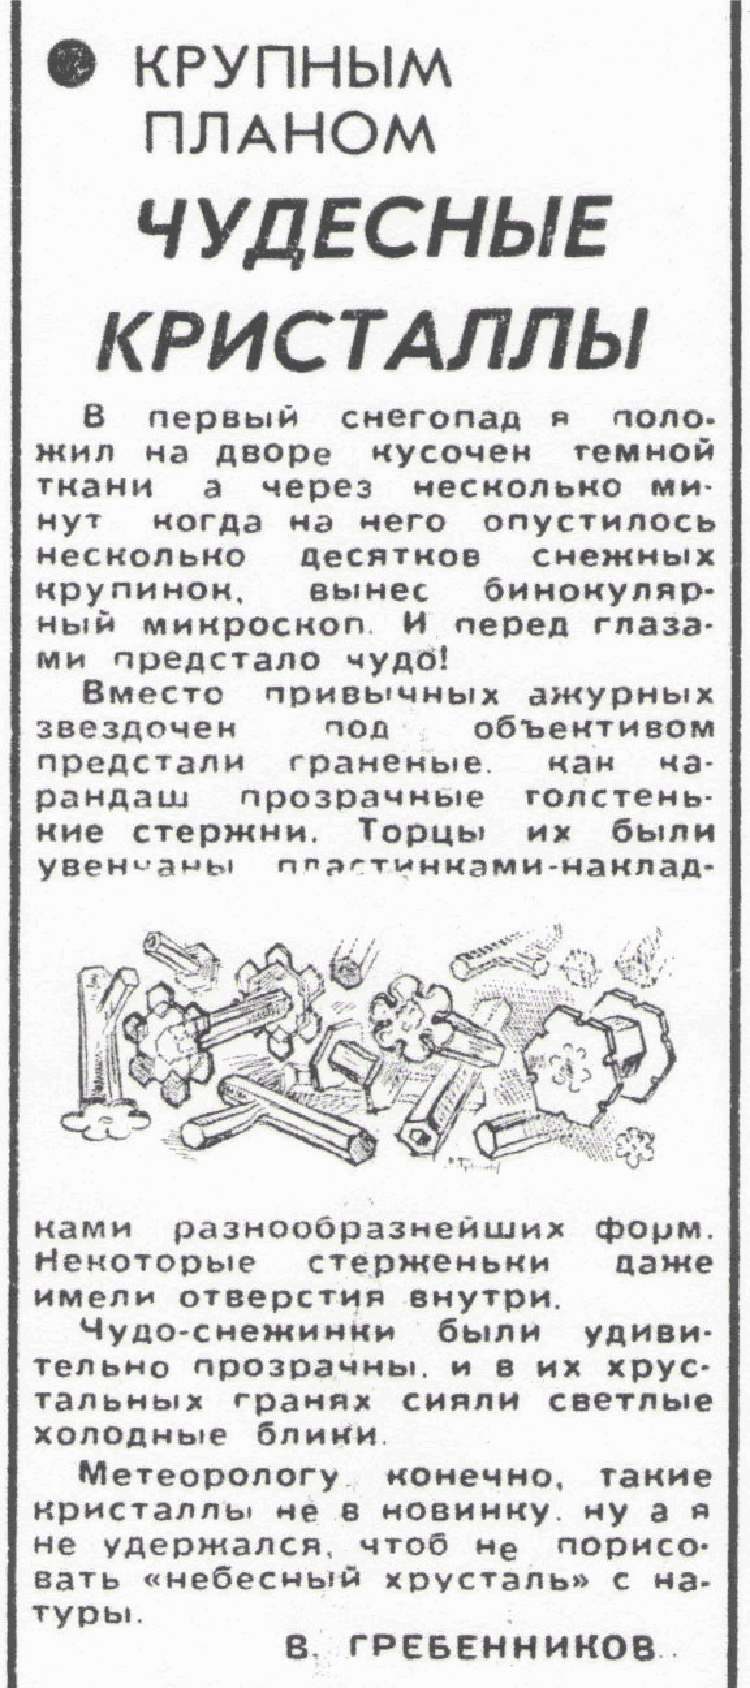 Чудесные кристаллы. В.С. Гребенников. Сельская жизнь, 01.11.1978.